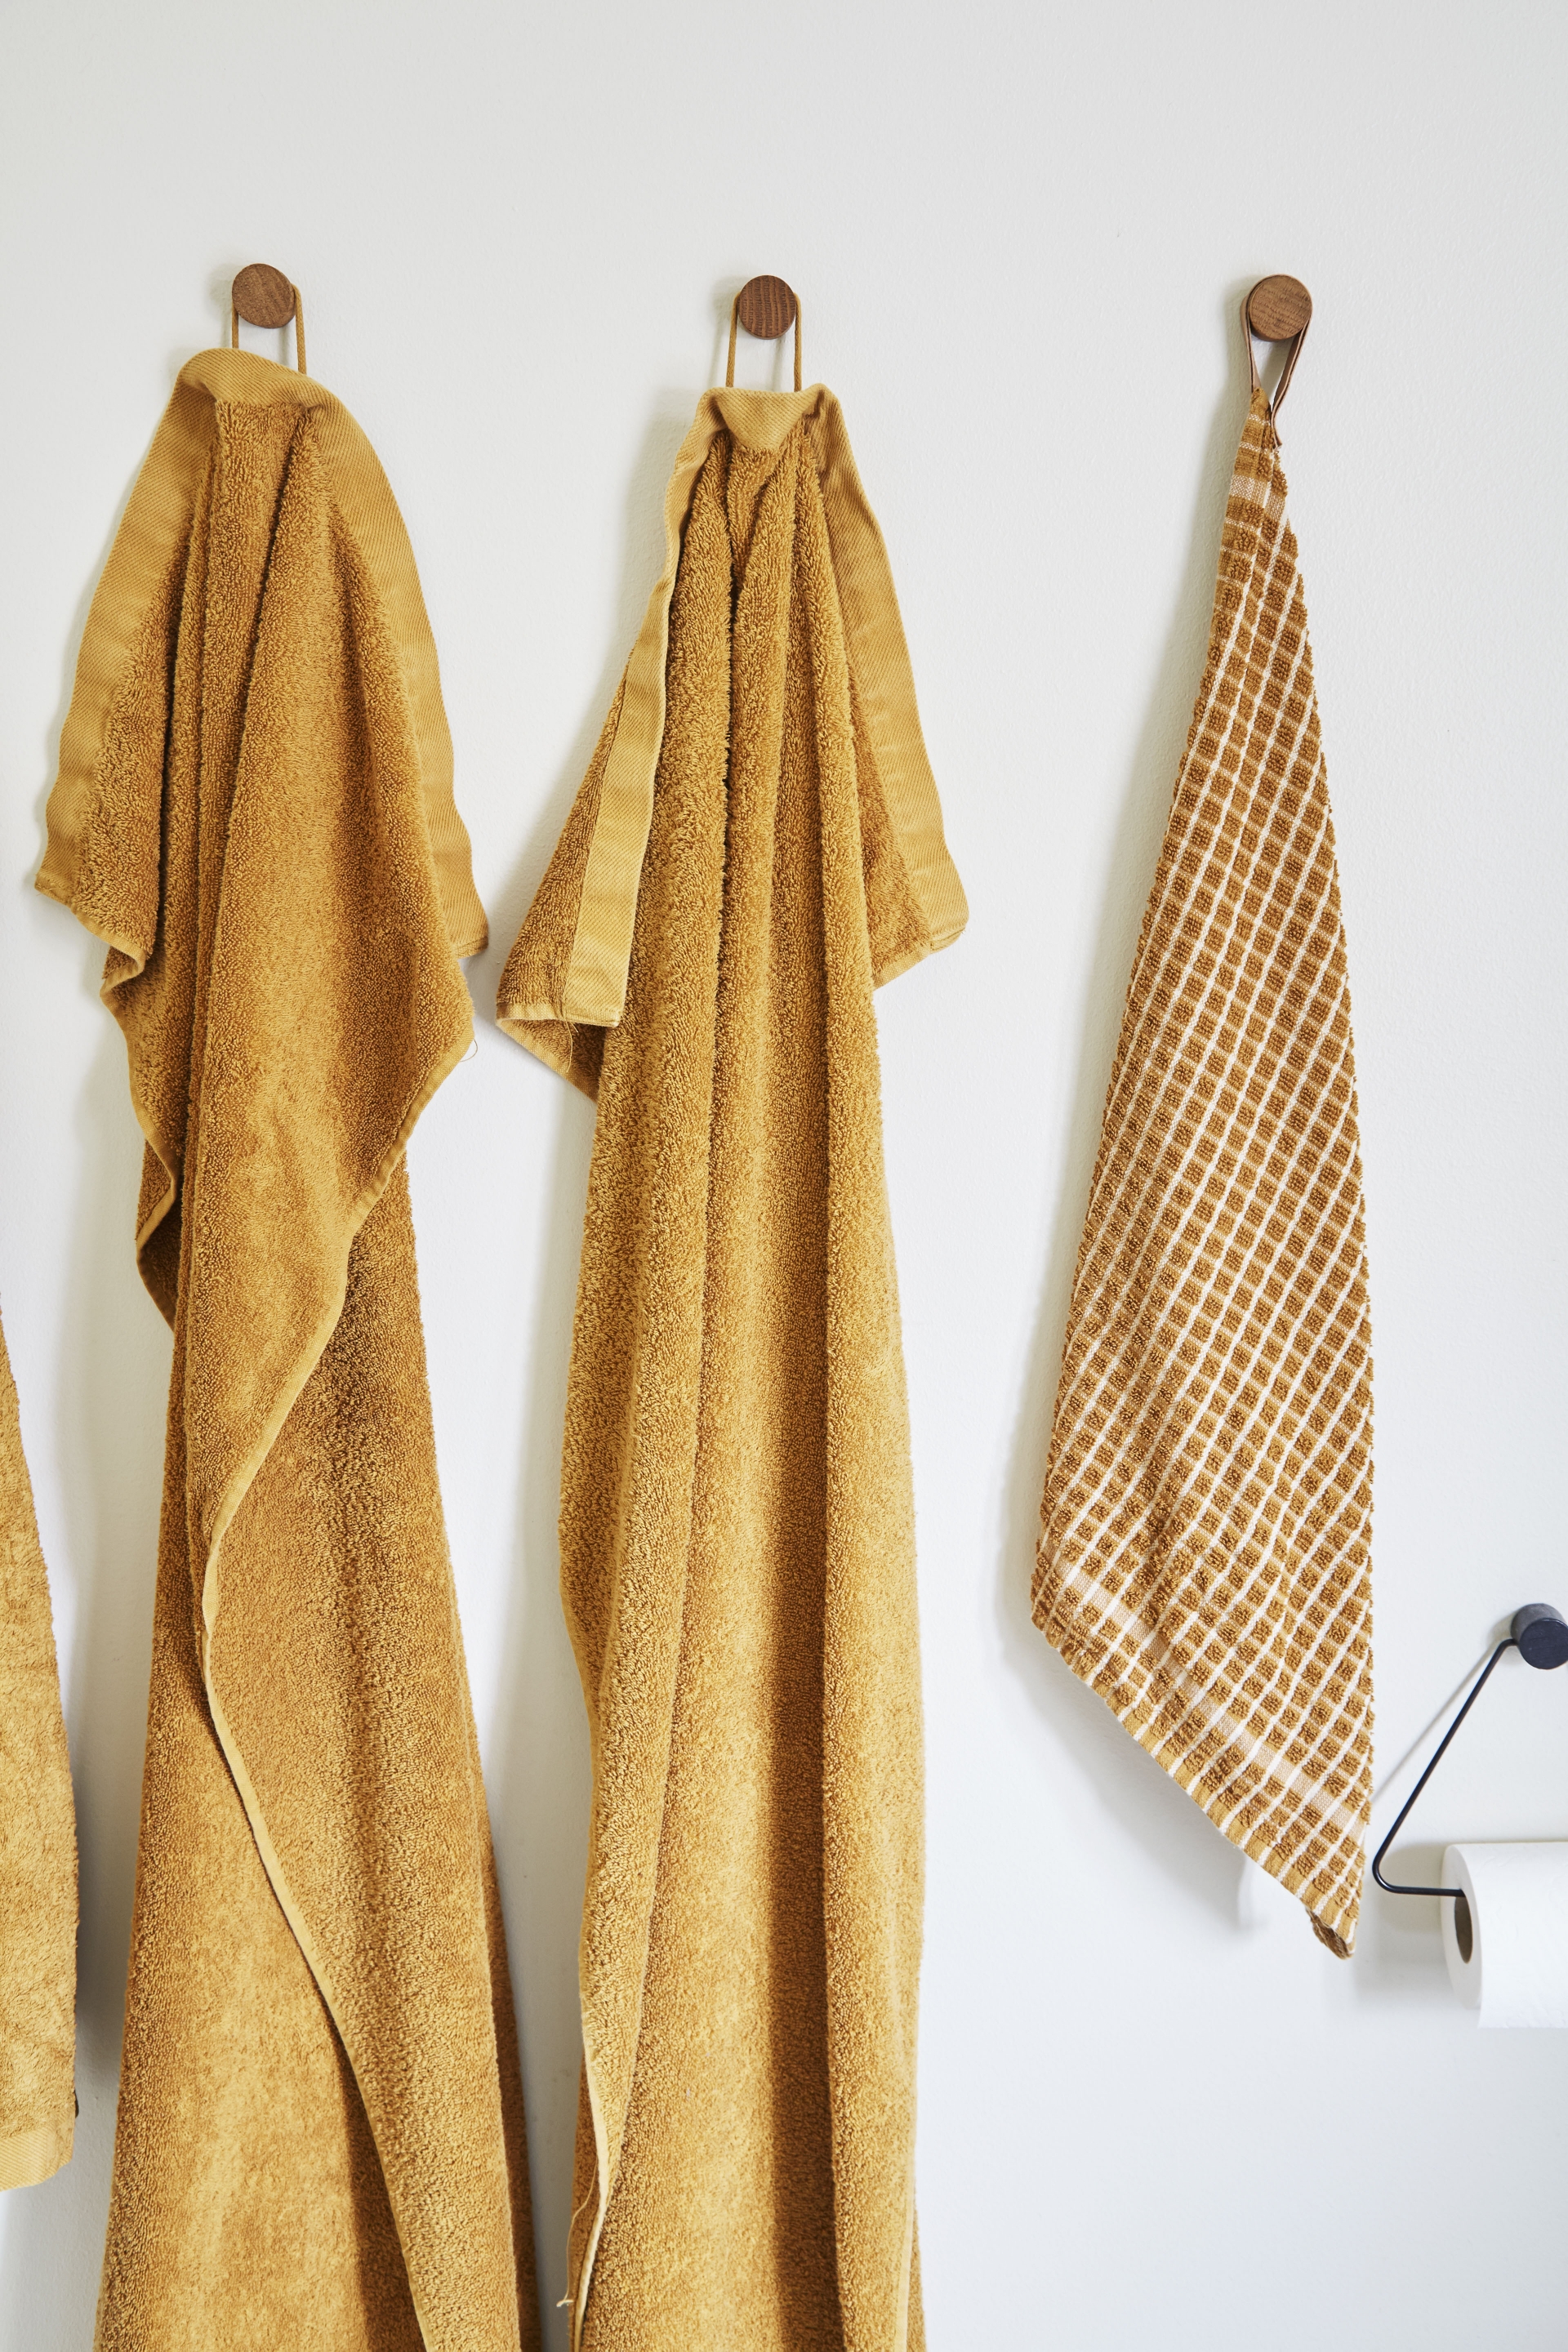 Màu khăn và áo choàng tắm cũng được lựa chọn đồng màu cam gạch nổi bật., treo trên những núm gỗ nhỏ thay cho kệ nhiều móc bằng inox nhàm chán.